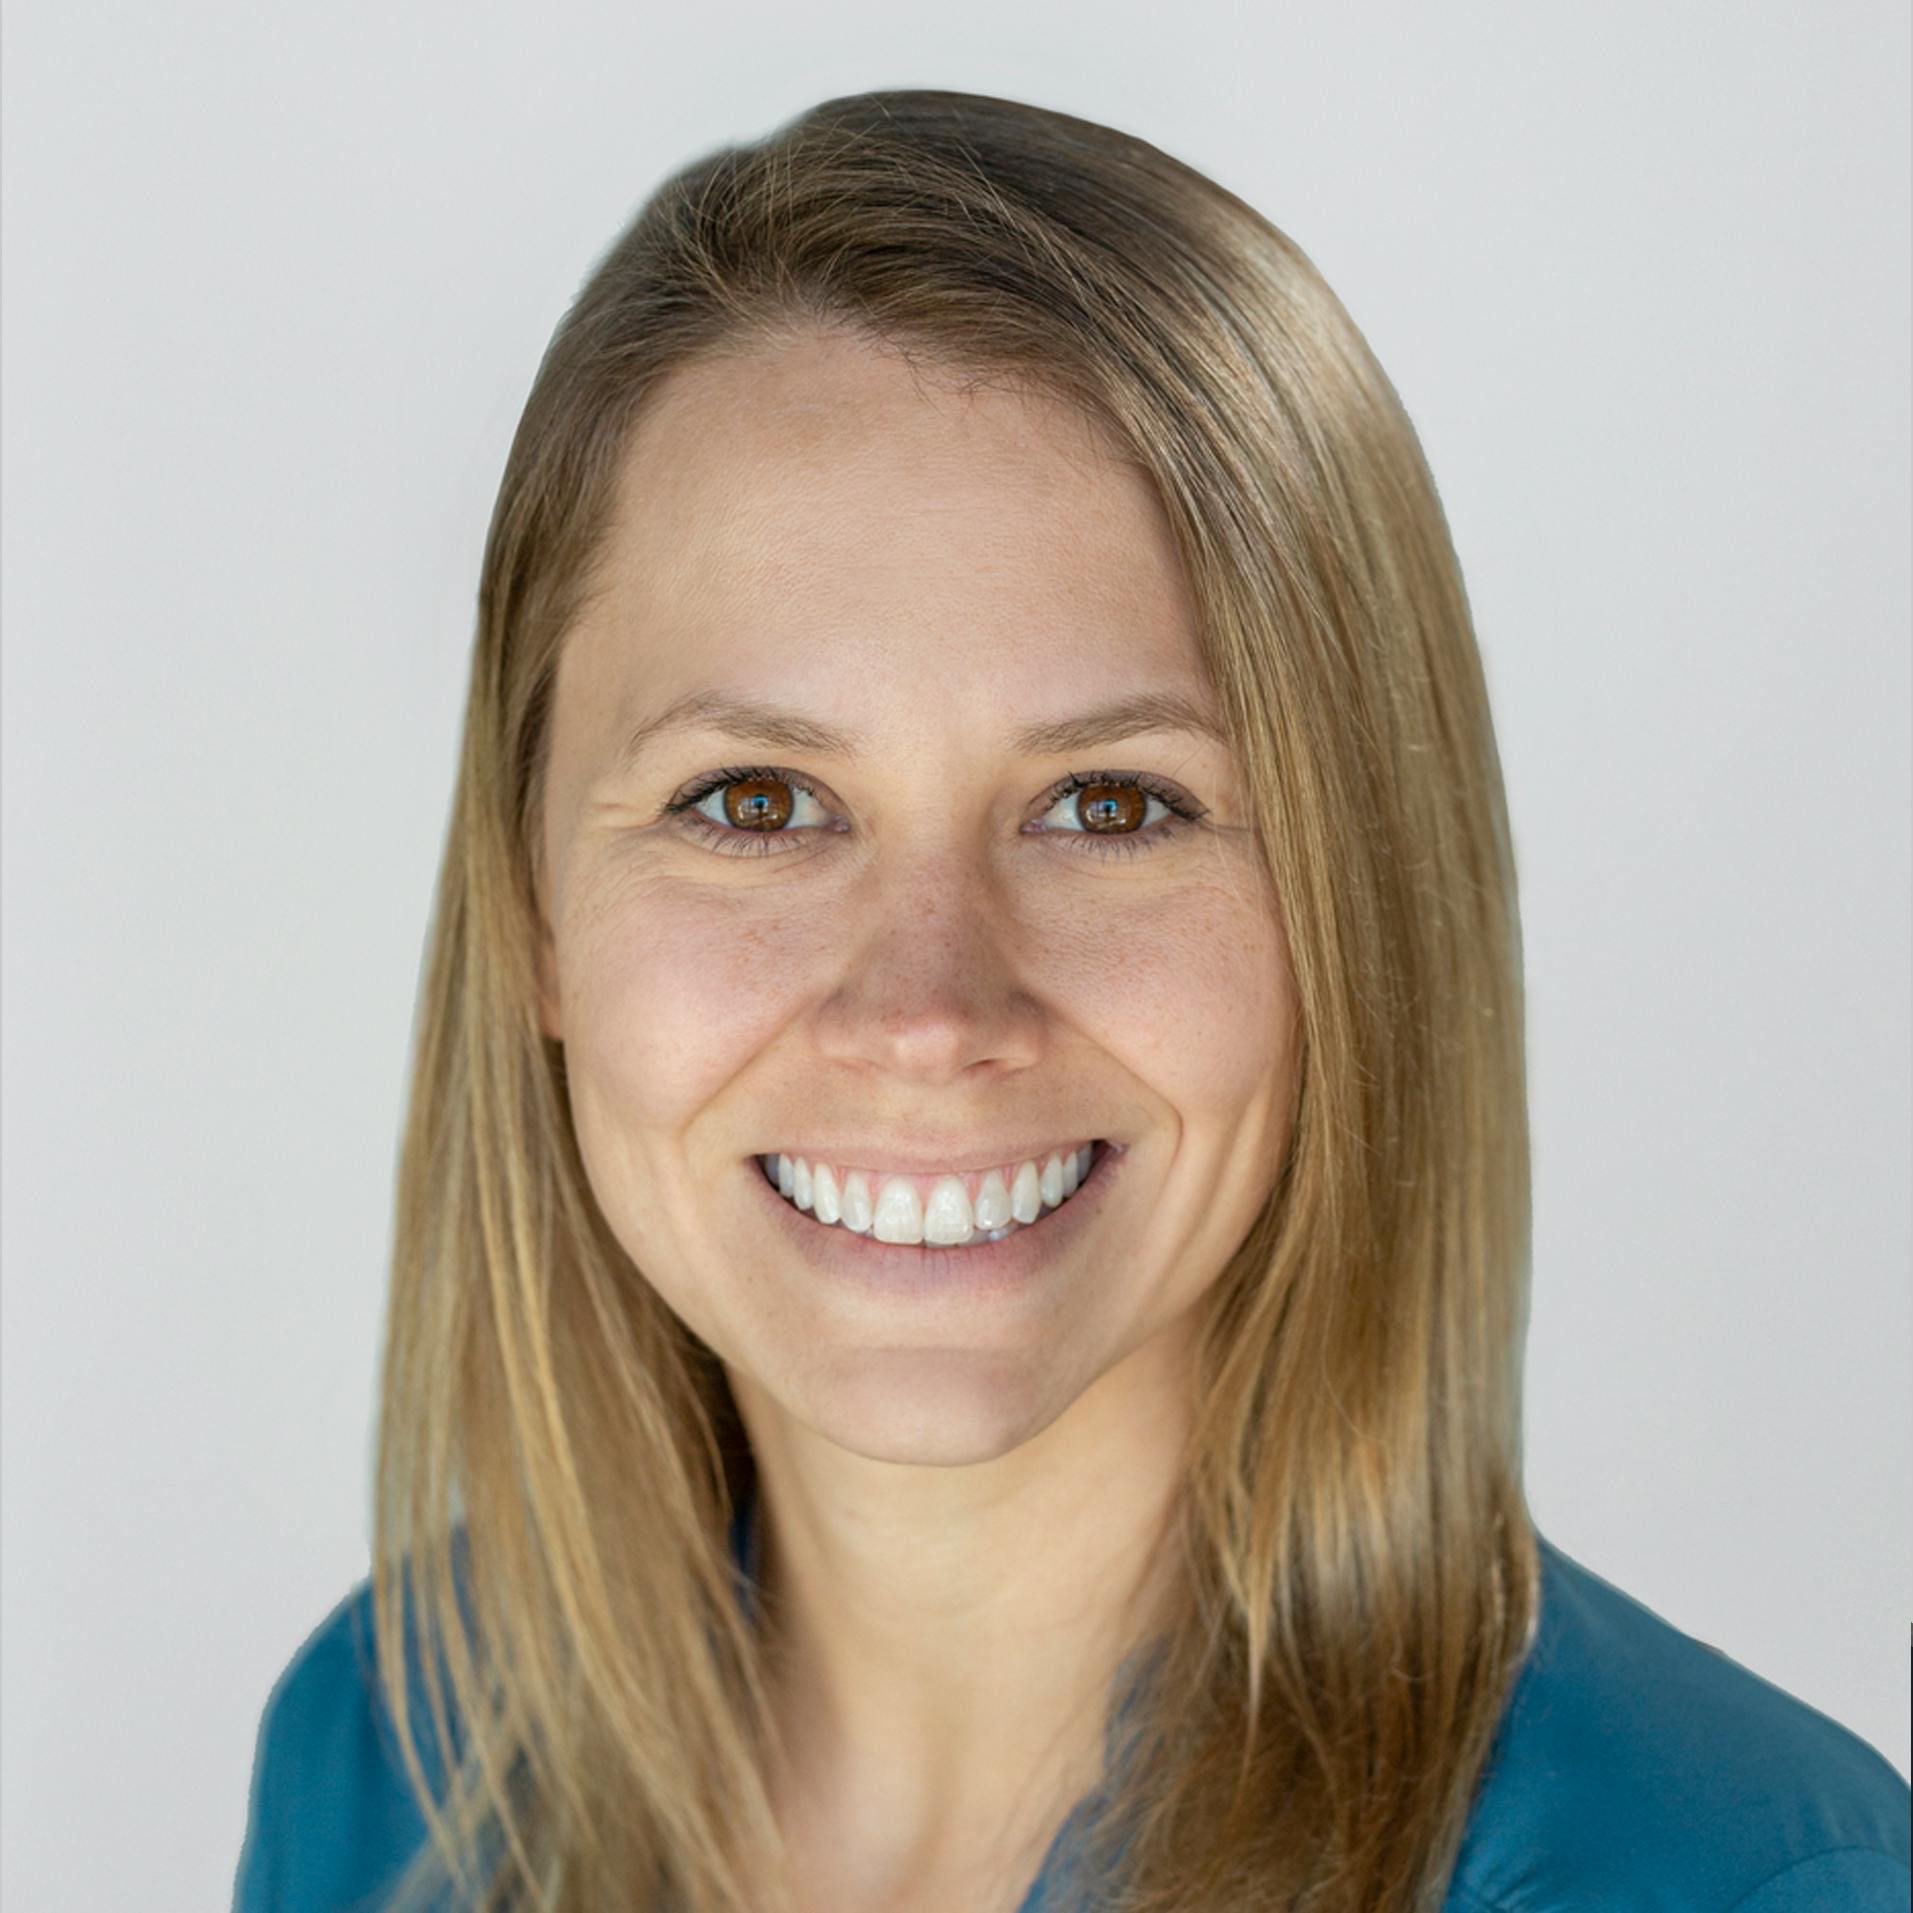 Team member, Kelsey Madsen